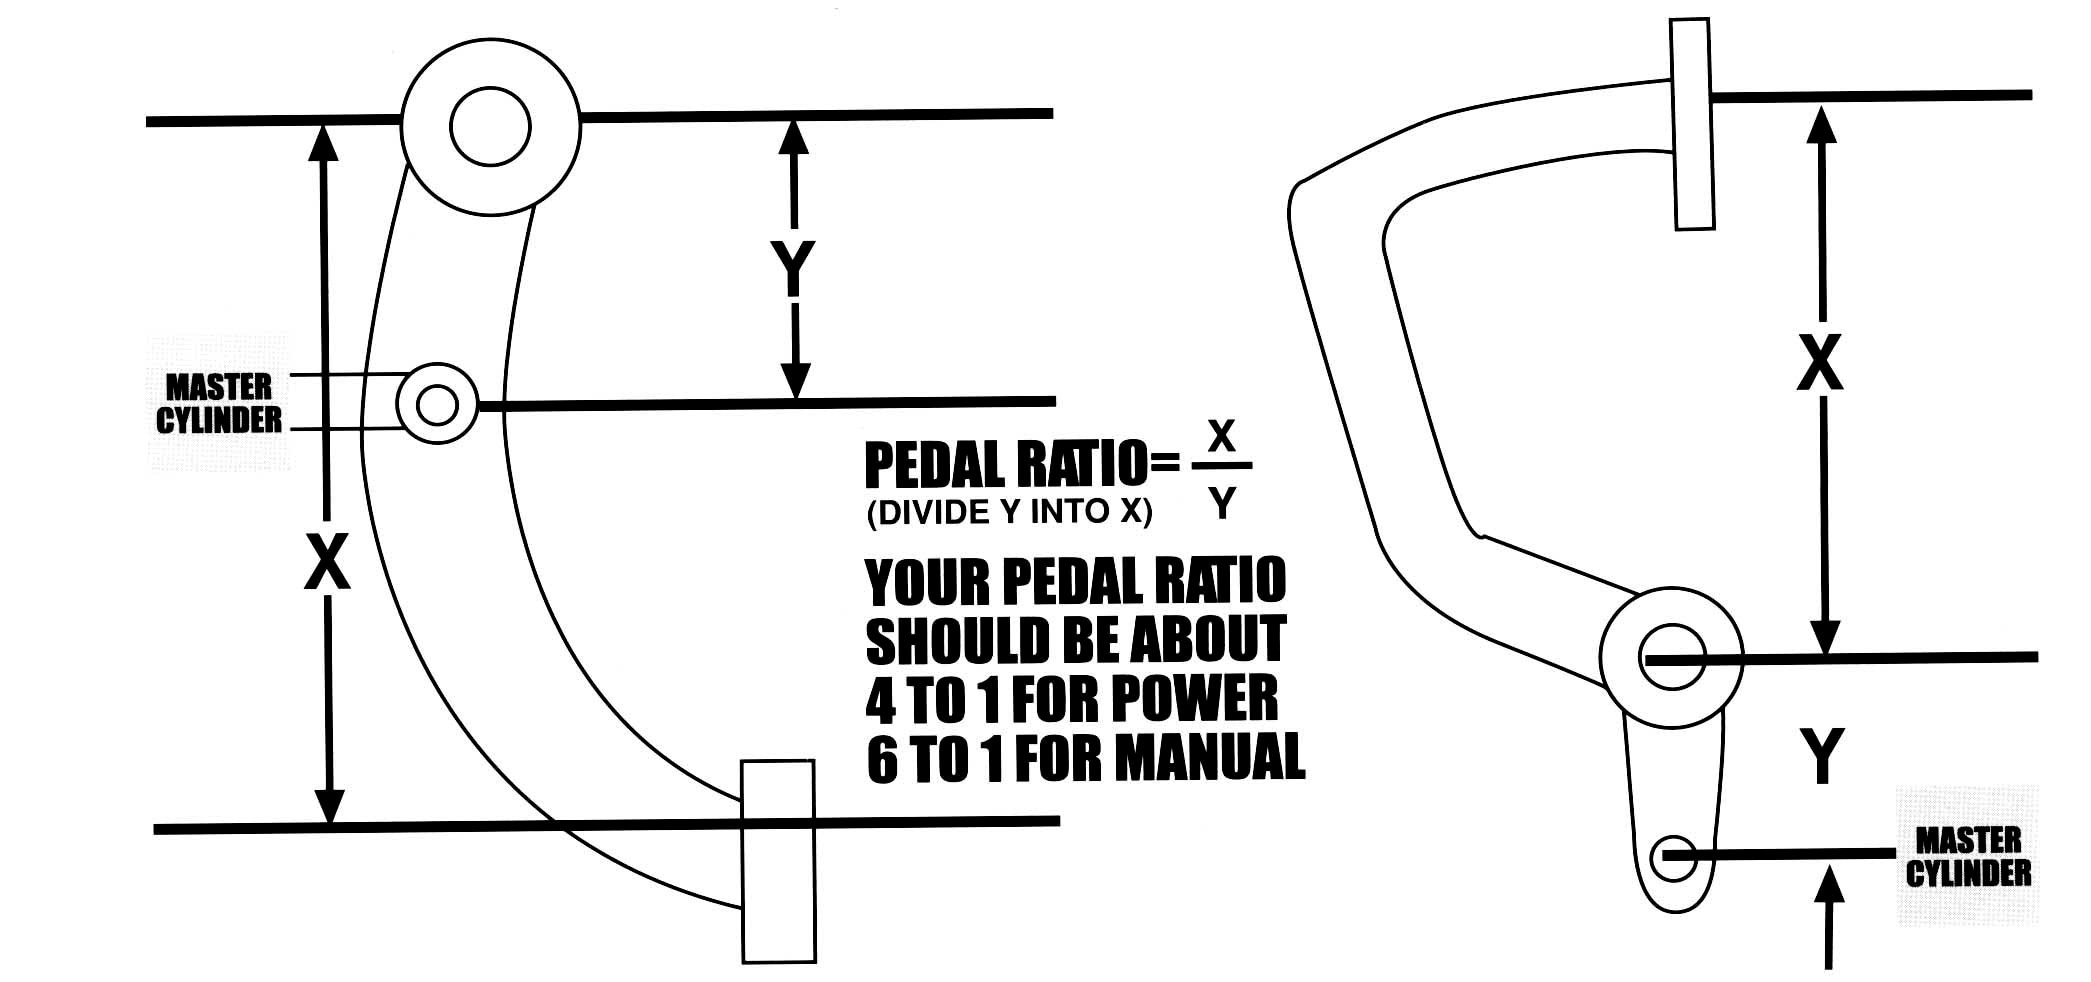 Ford Brake Master Cylinder Diagram Selecting and Installing Brake System Ponents Proper Plumbing Of Ford Brake Master Cylinder Diagram